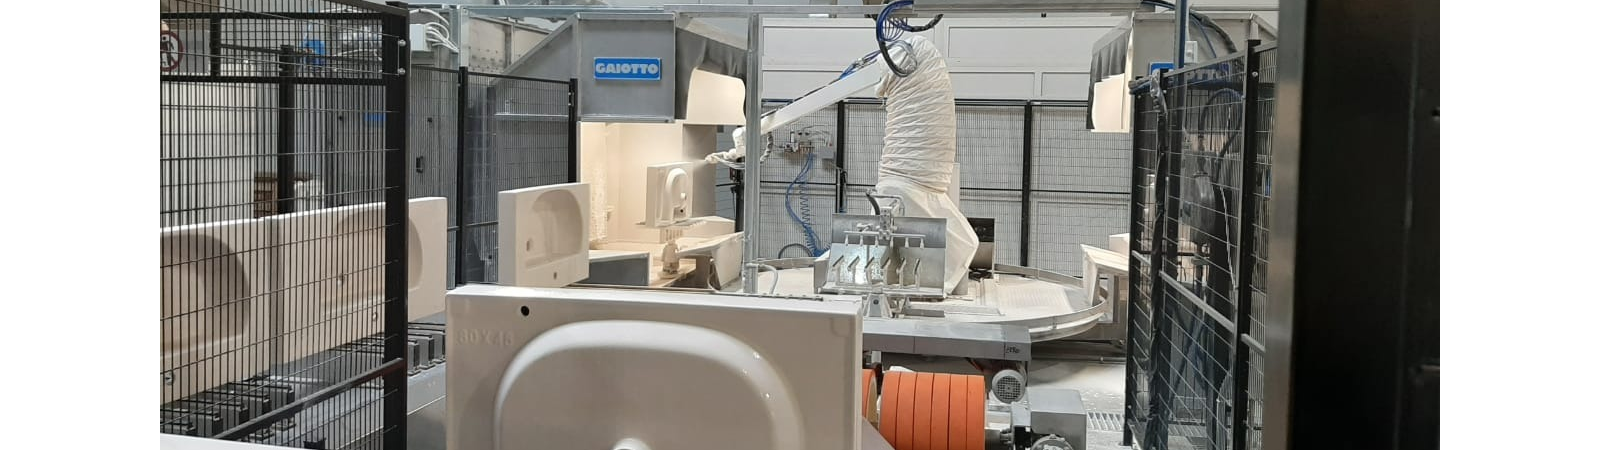 Kerama Marazzi, esmaltação robotizada Gaiotto para ingresso em louças sanitárias